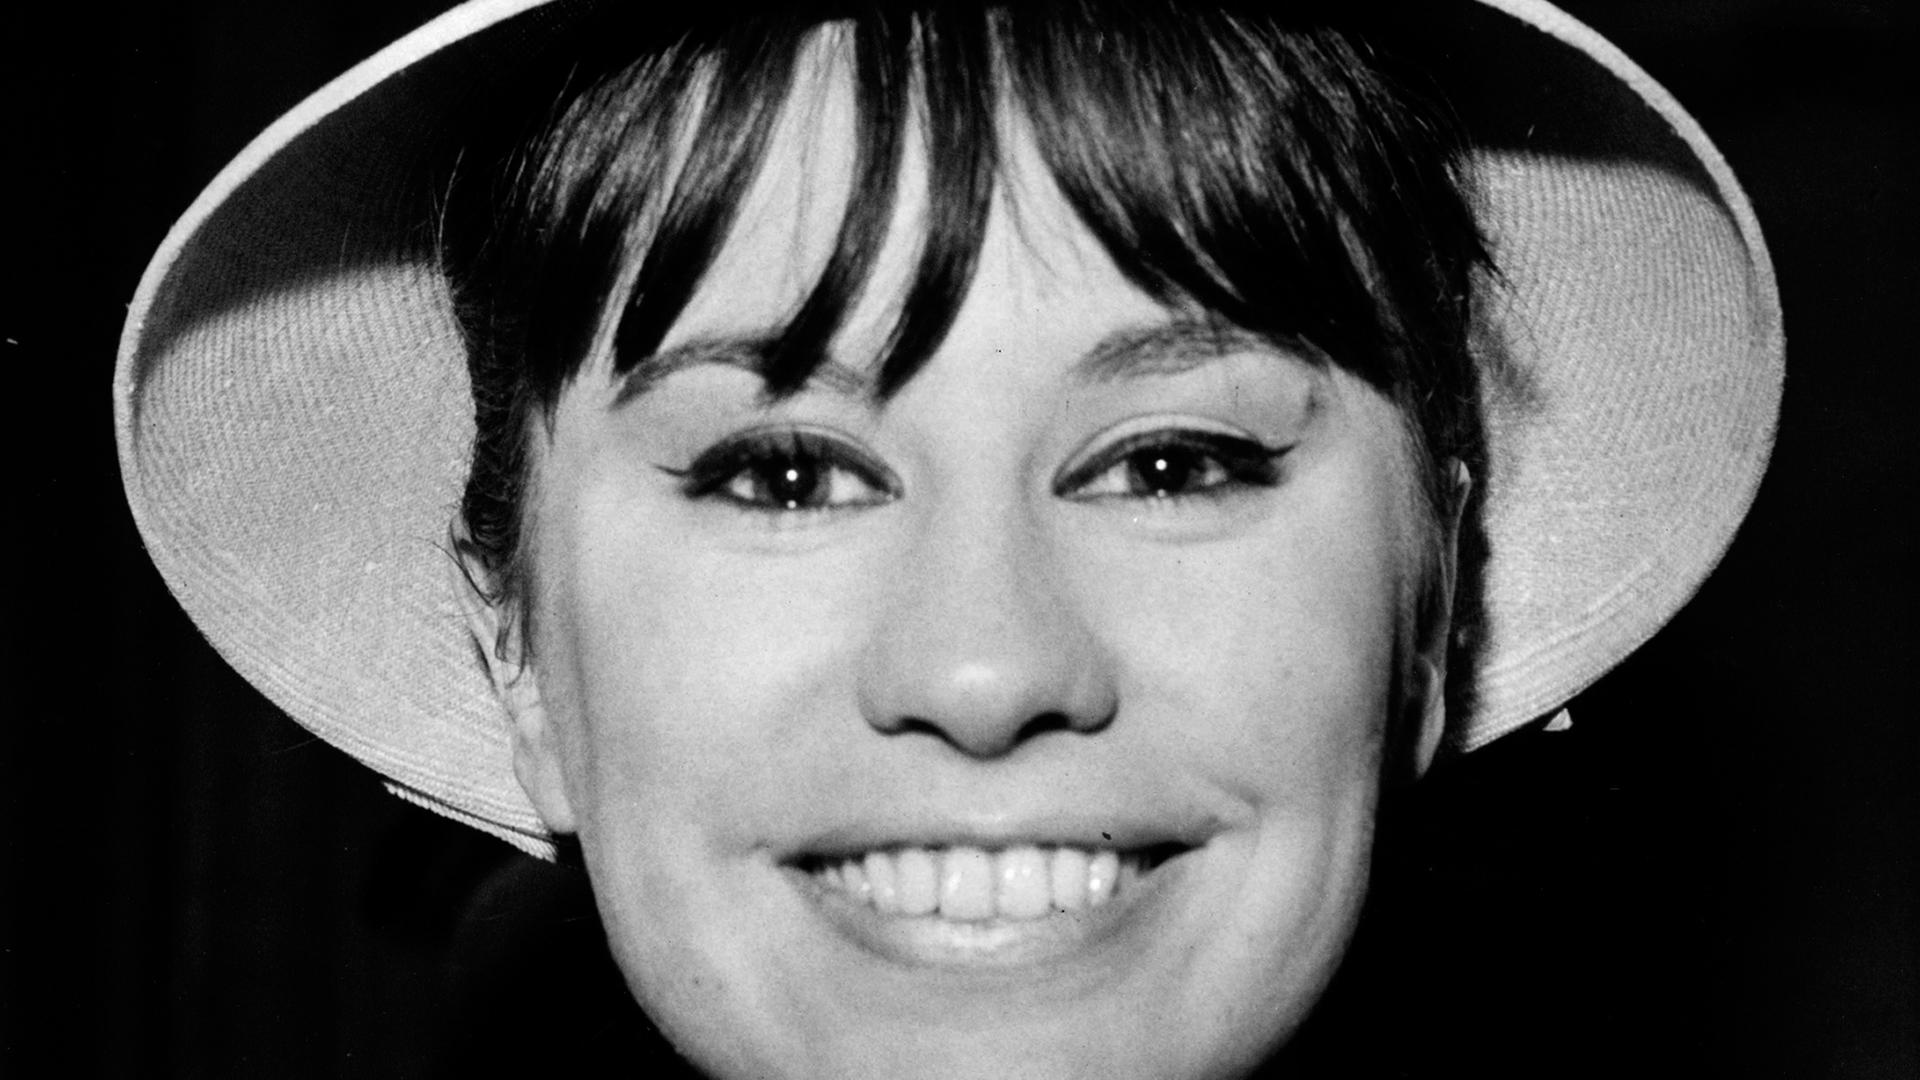 Das Foto zeigt die brasilianische Sängerin Astrud Gilberto im Jahr 1965. Sie trägt einen Hut. 